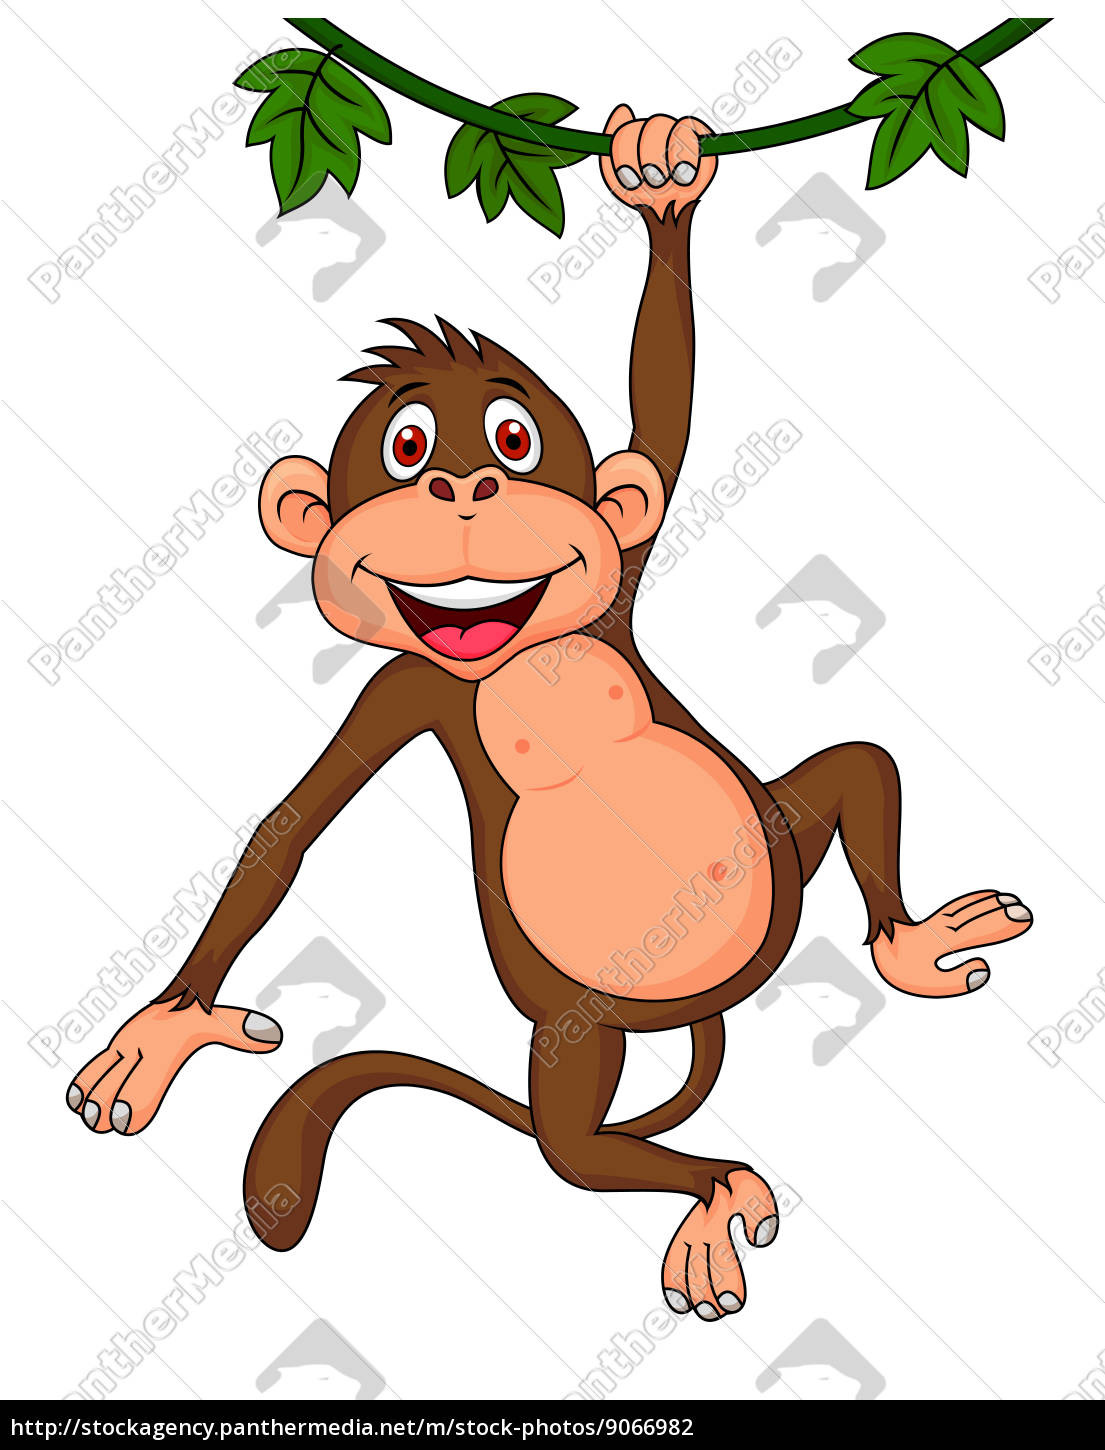 desenho de macaco bonito pendurado - Stockphoto #9066982